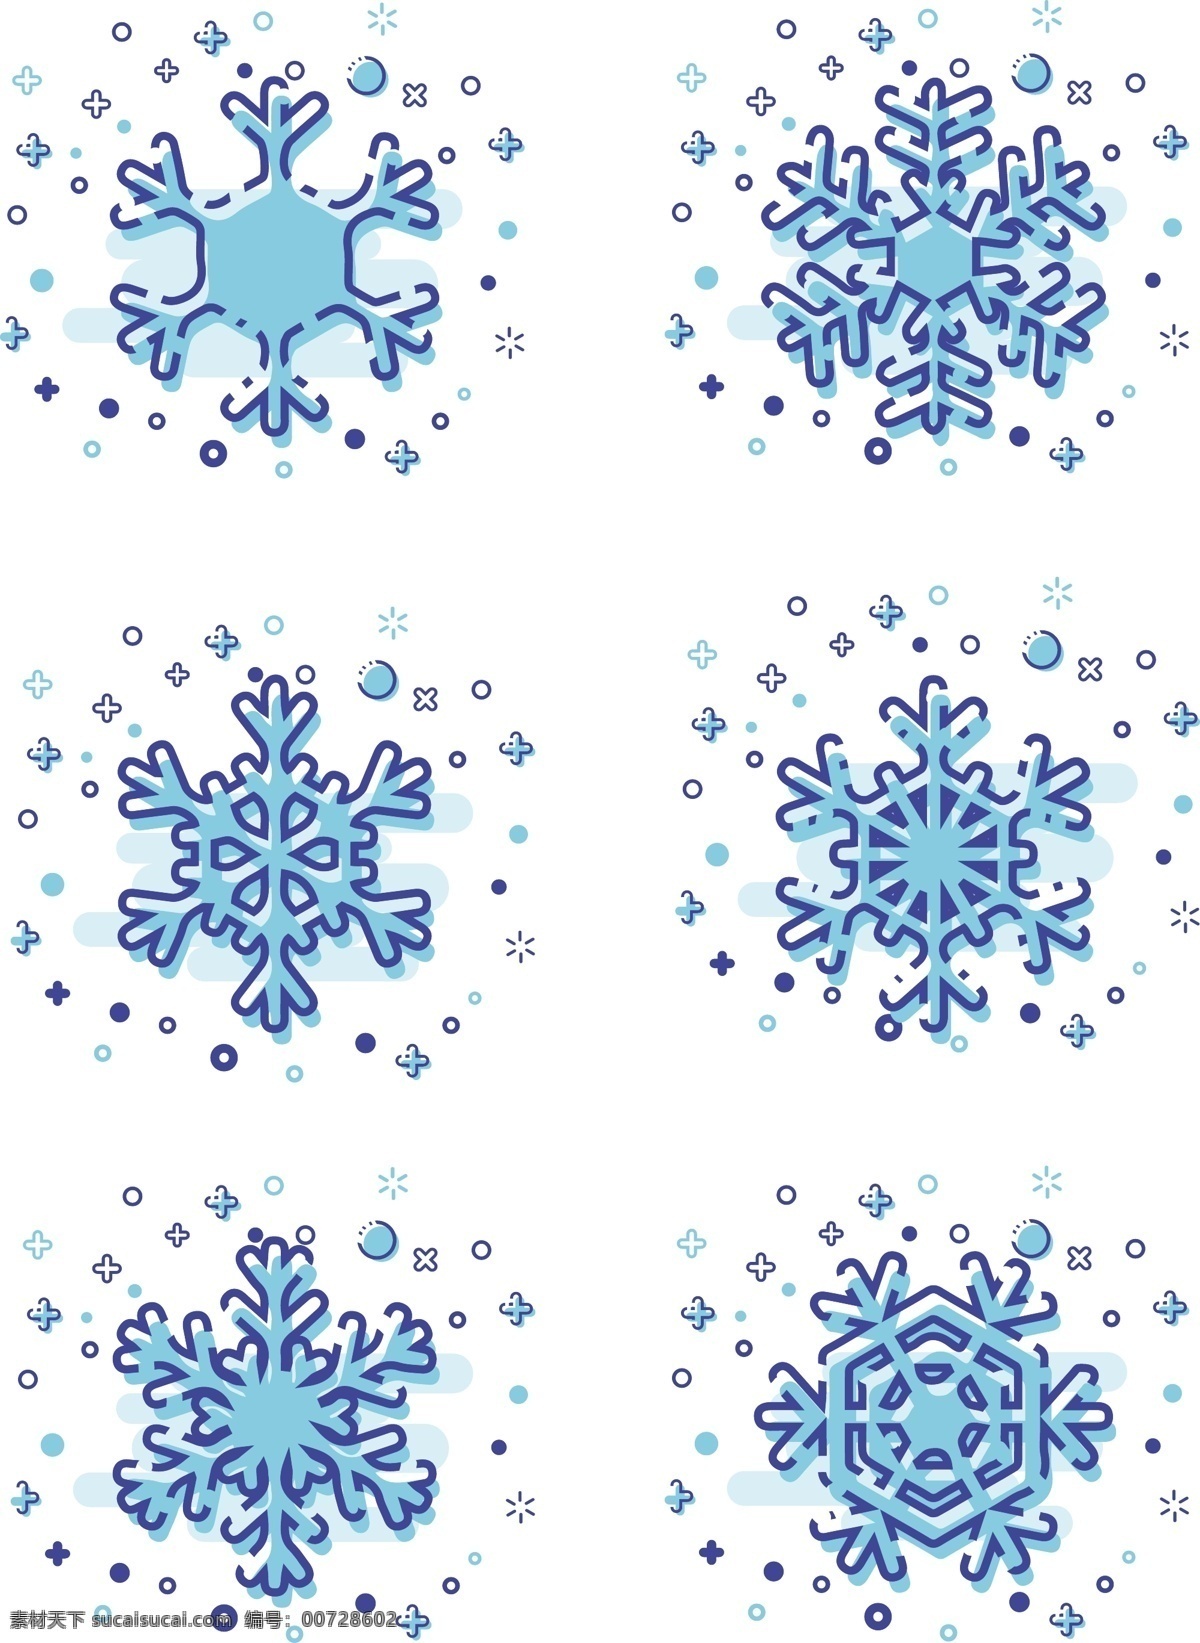 mbe 风格 冬季 雪花 商用 图标 元素 mbe风格 冬季雪花 可商用 图标元素